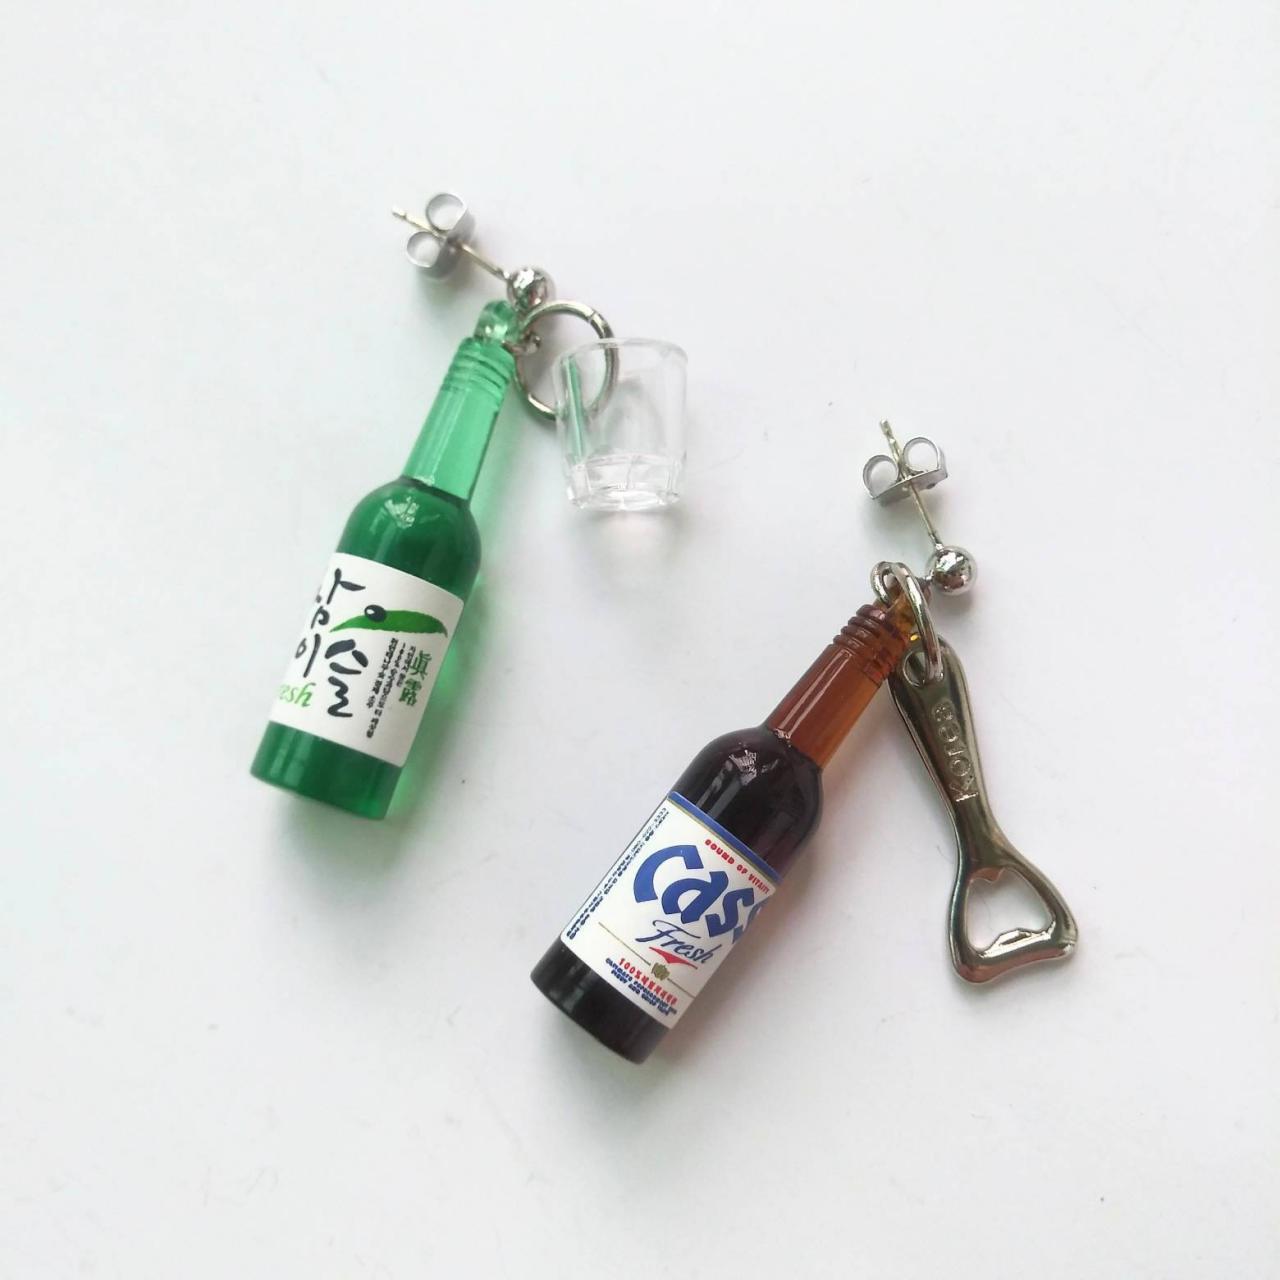 Korean Soju Bottle With Shot Glass And Korean Cass Beer Bottle With Bottle Opener Earrings, Drink Bottle Earrings